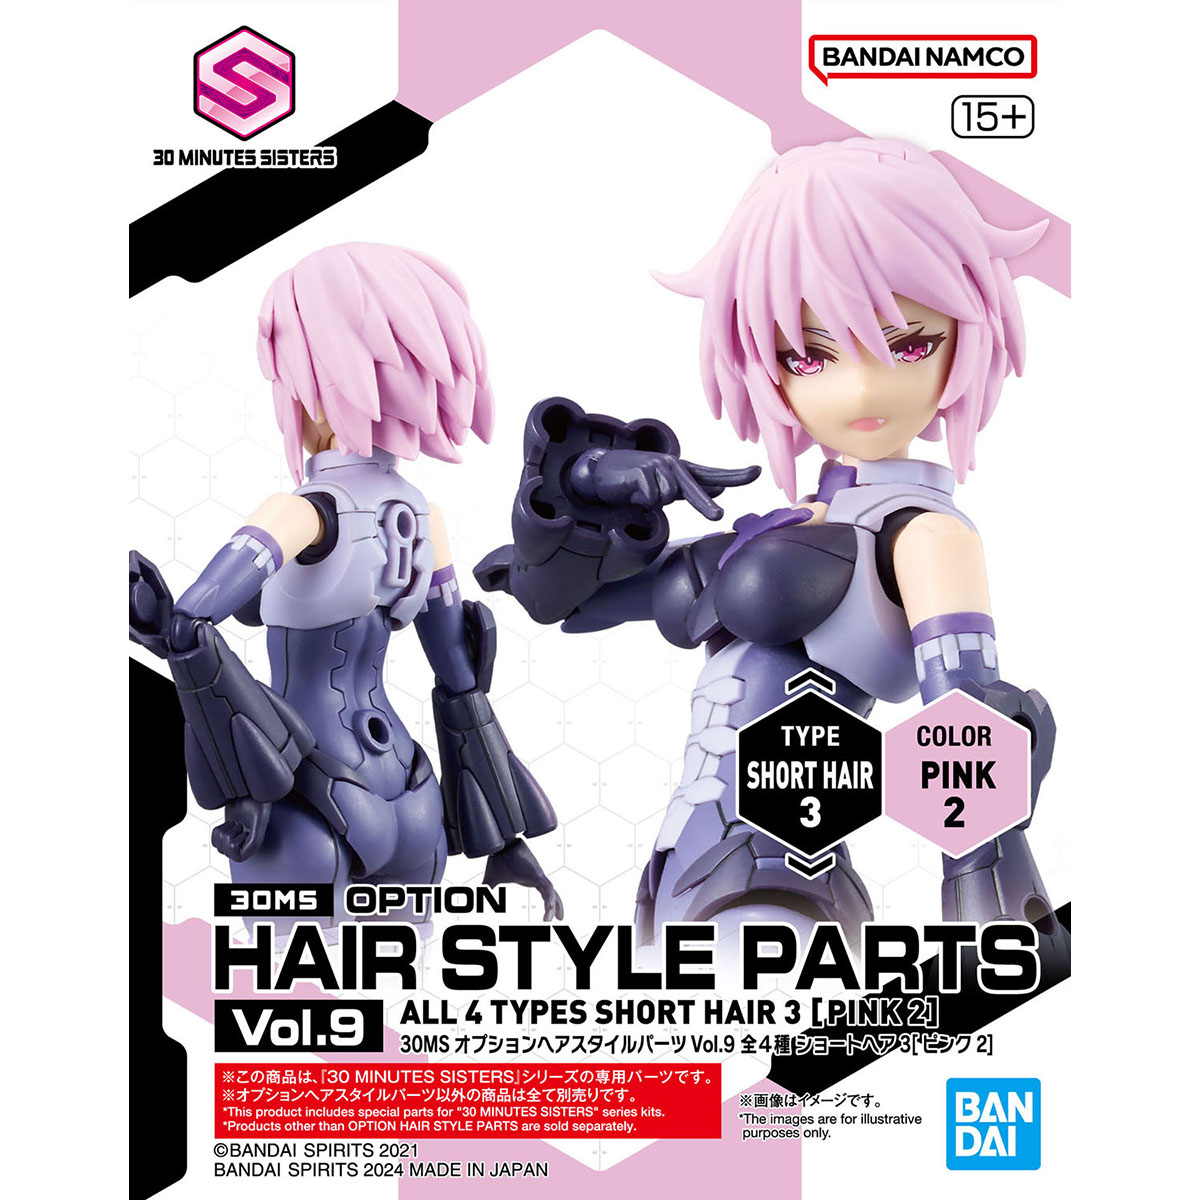 30MS オプションヘアスタイルパーツVol.9 全4種 ショートヘア3[ピンク2 